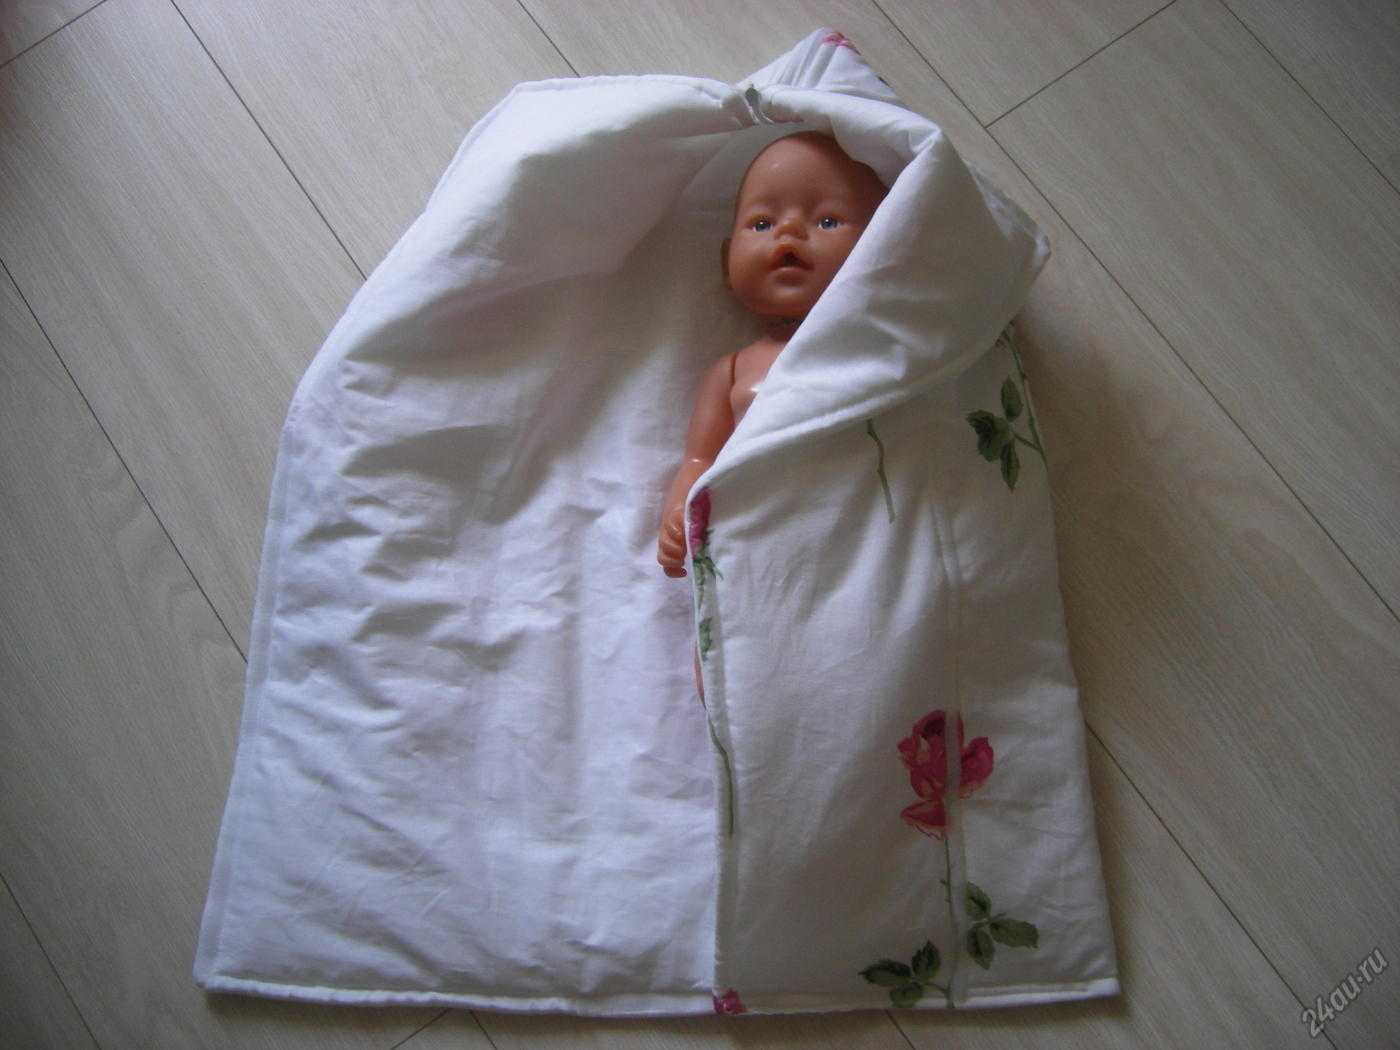 Детское одеяло своими руками: варианты. как сделать одеяло для новорожденного, конверт на выписку своими руками